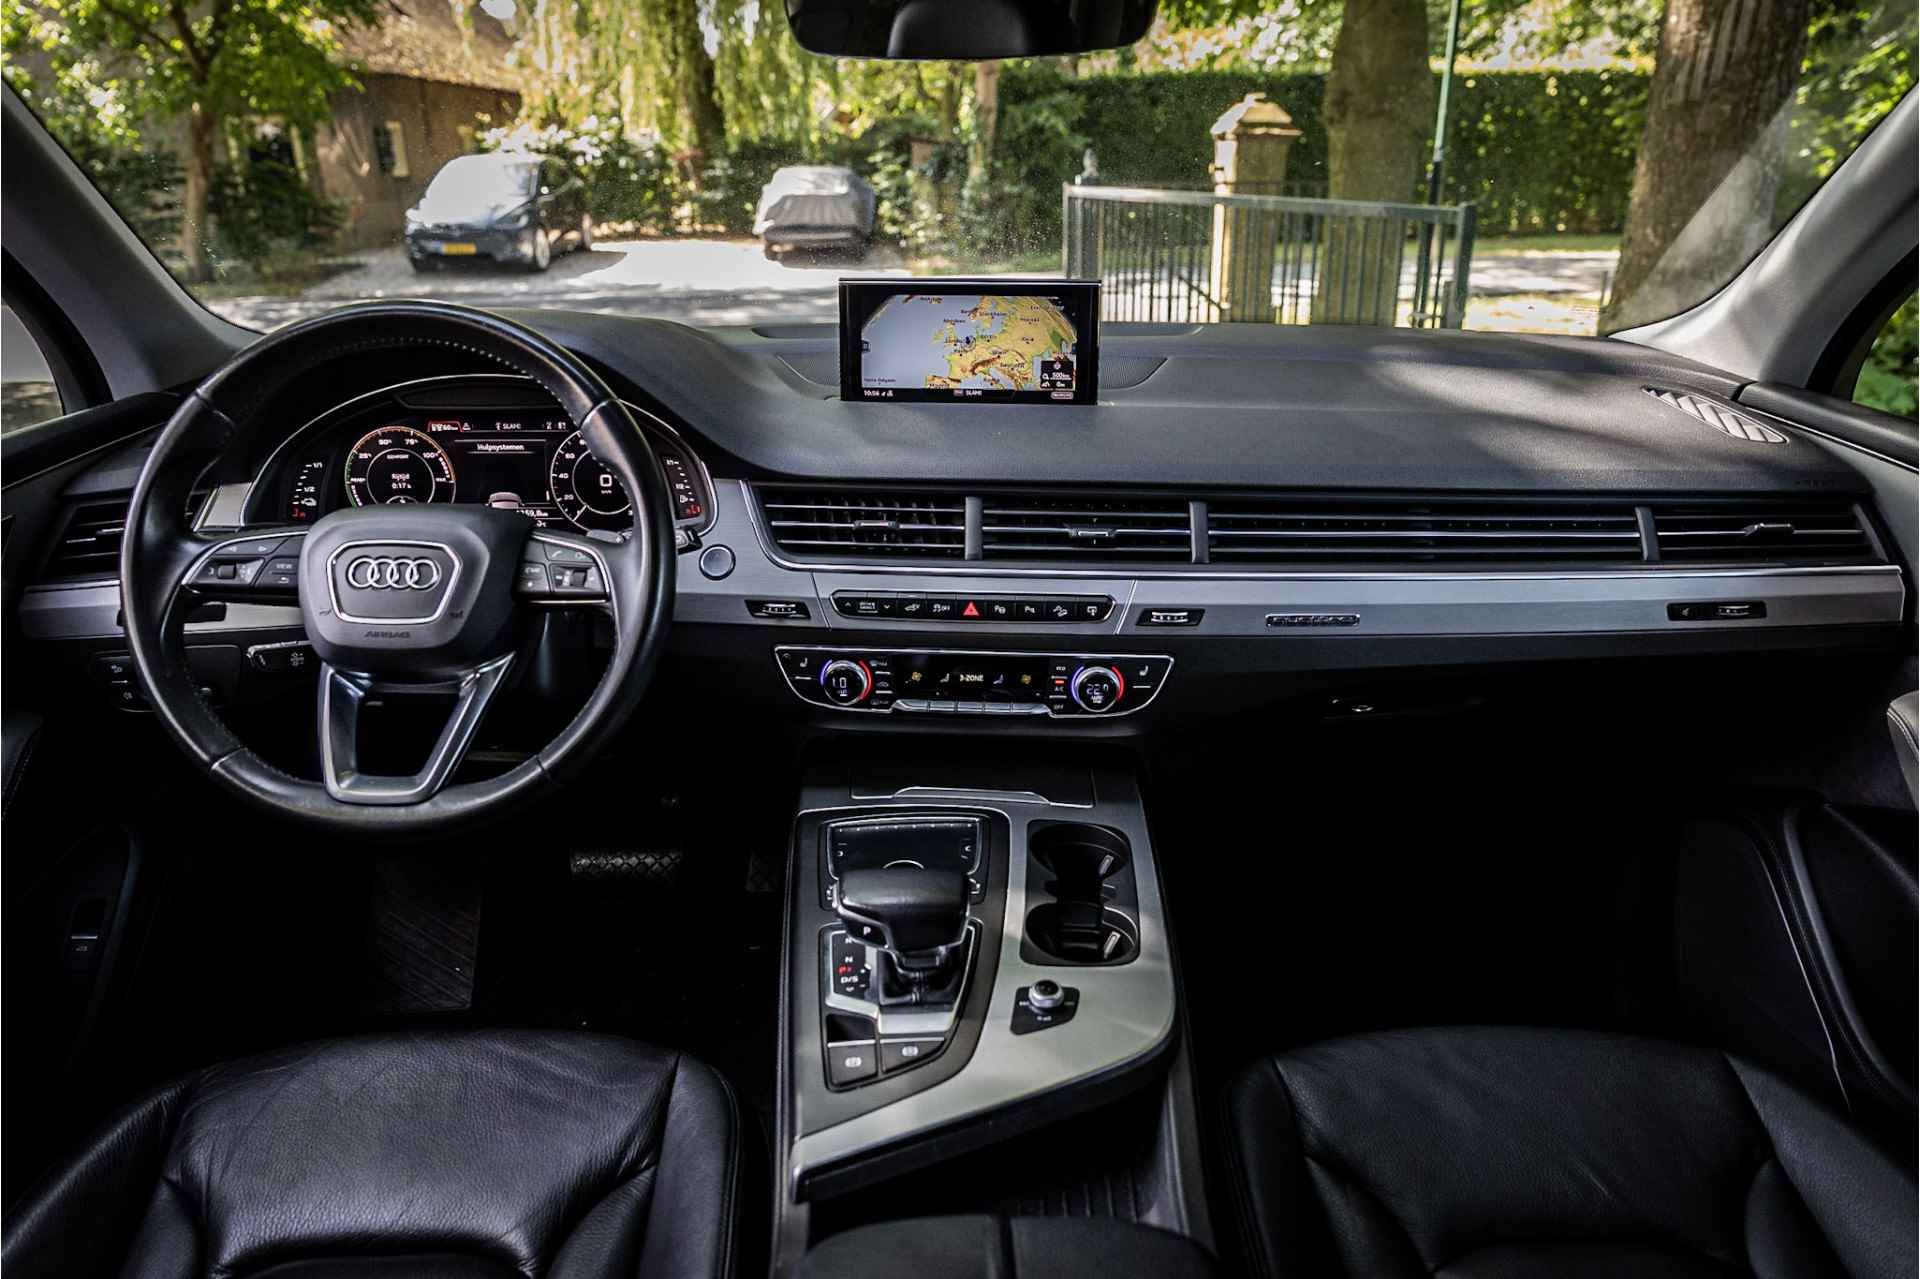 Audi Q7 3.0 TDI e-tron Quattro Panorama Luchtvering 50% Wegenbelasting - 8/29